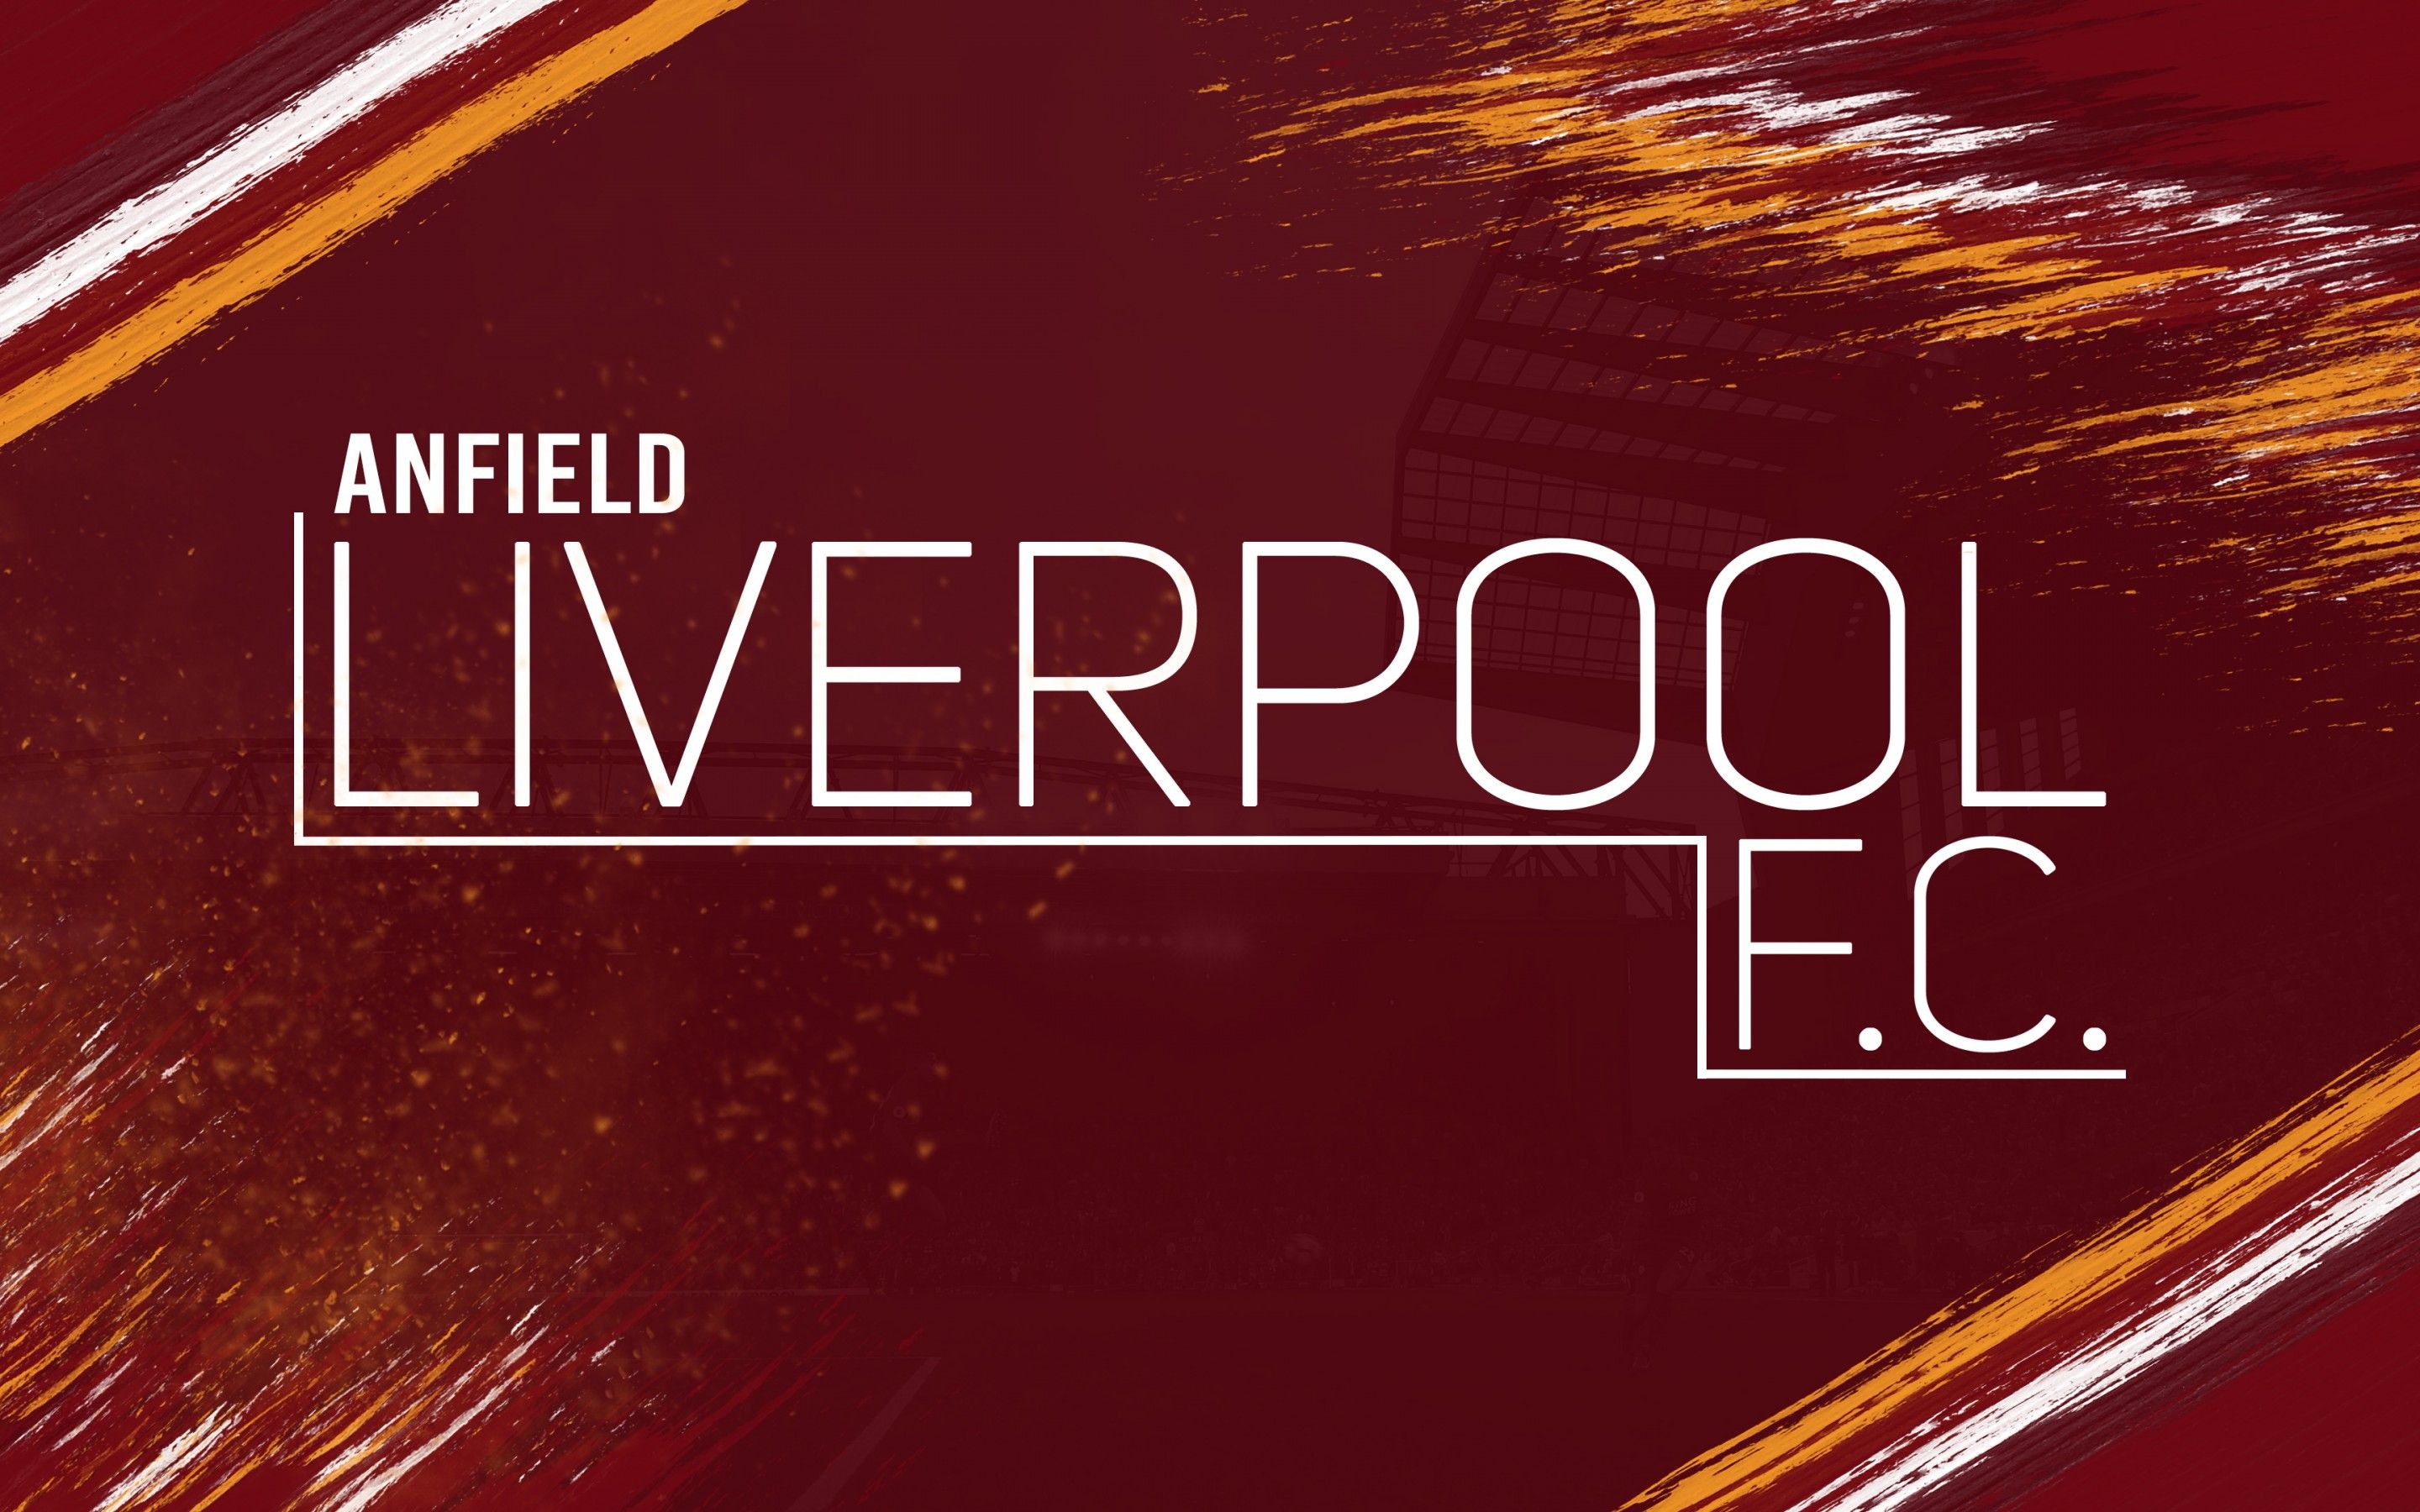 Wallpaper Liverpool FC, Football club, 4K, Sports